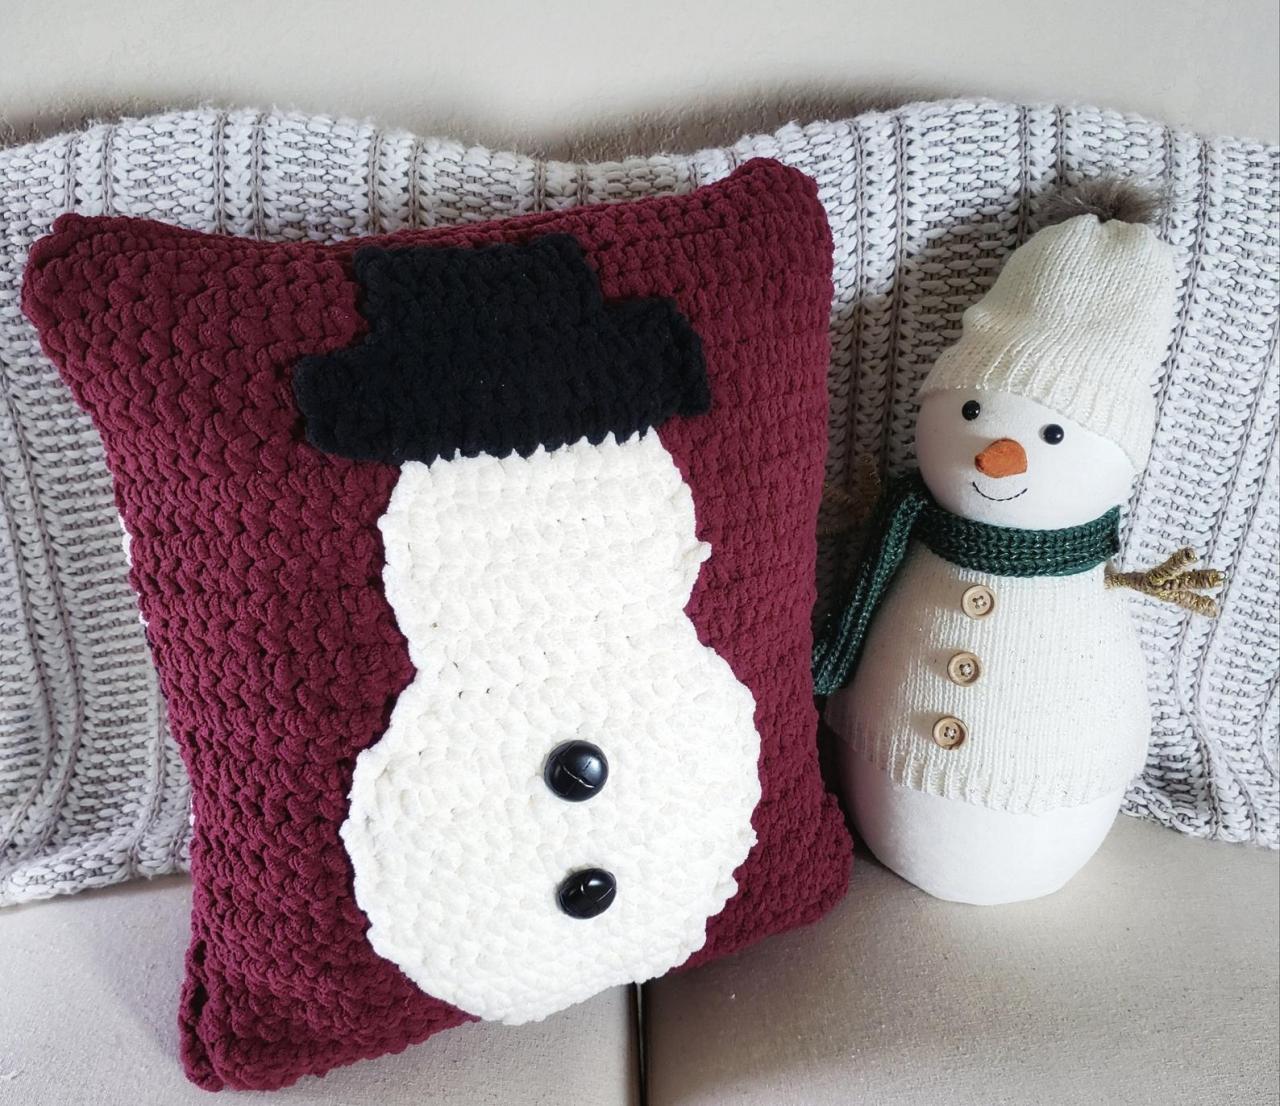 Snowman Throw Pillow Crochet Pattern - Digital Download - Crochet Pattern - Snowman Pillow Pattern - Throw Pillow - Pdf Download